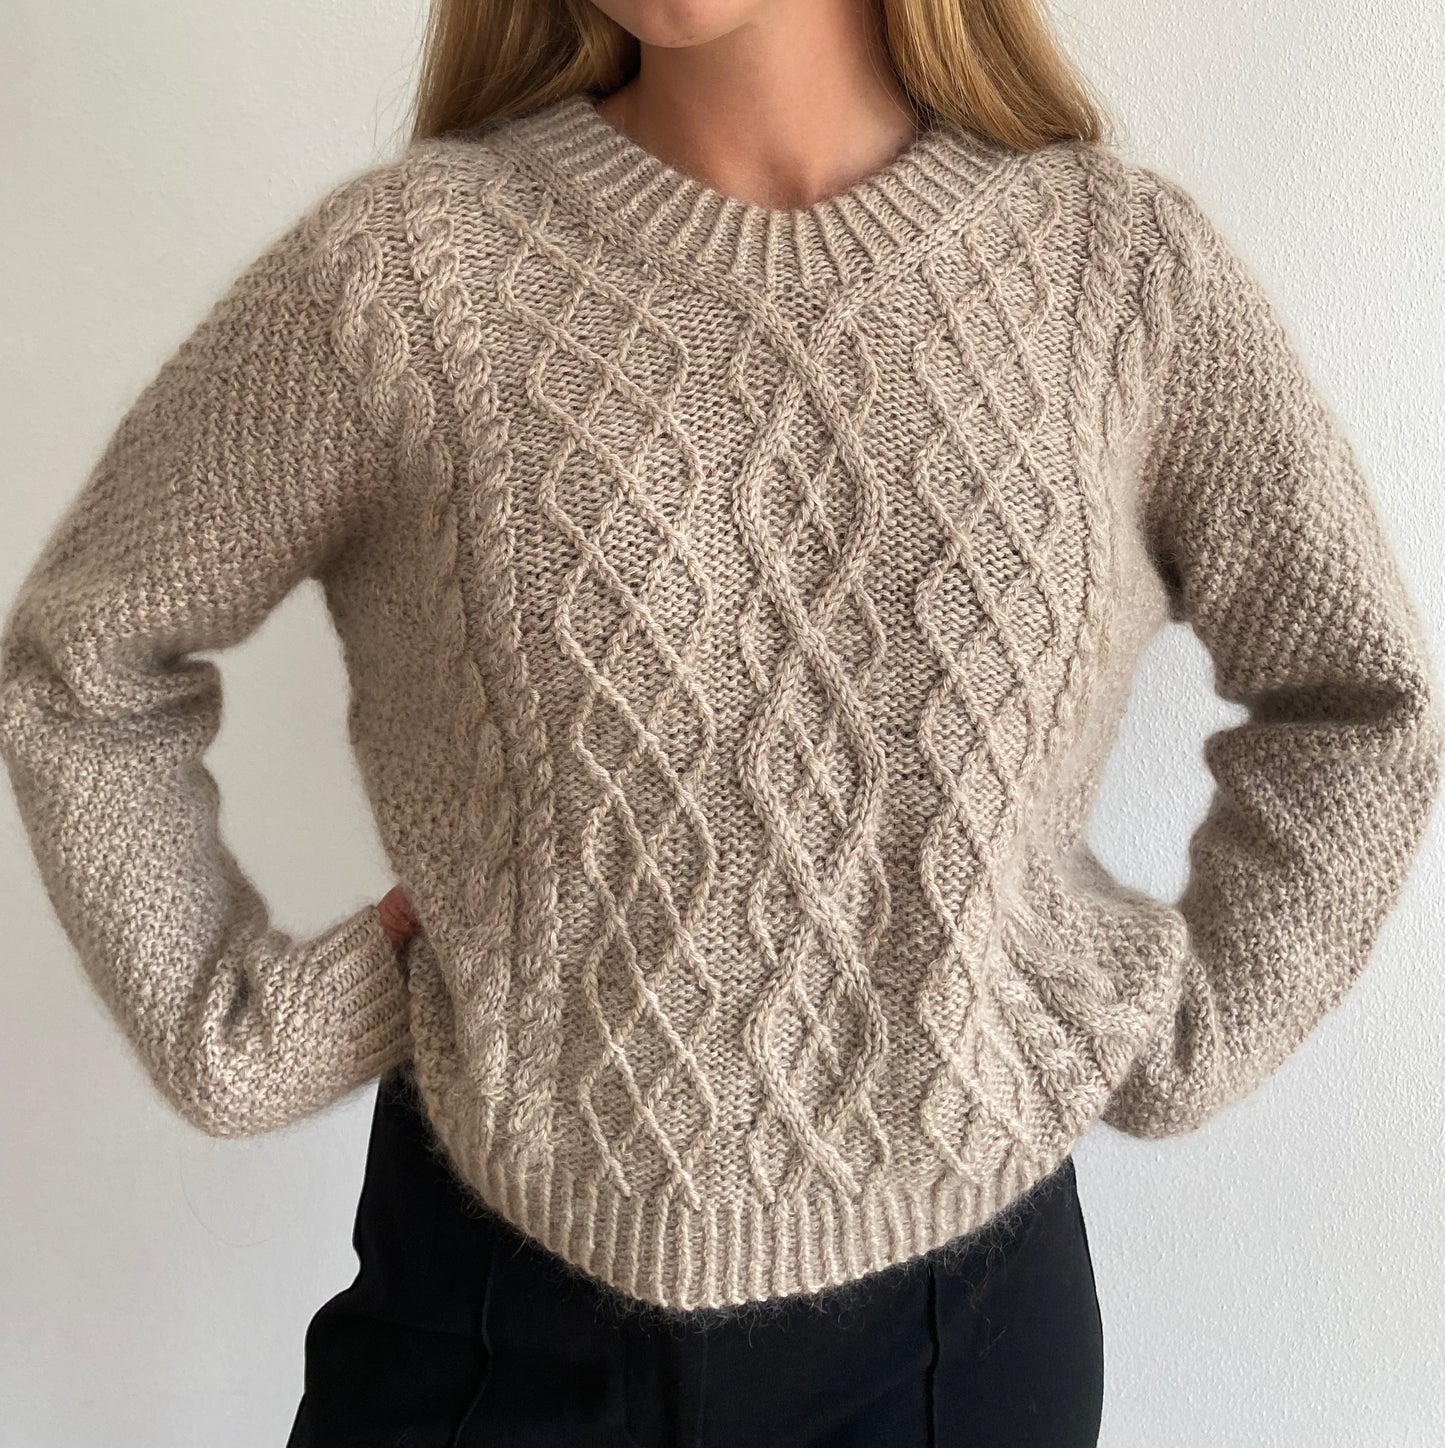 Swirl Sweater Chunky - English